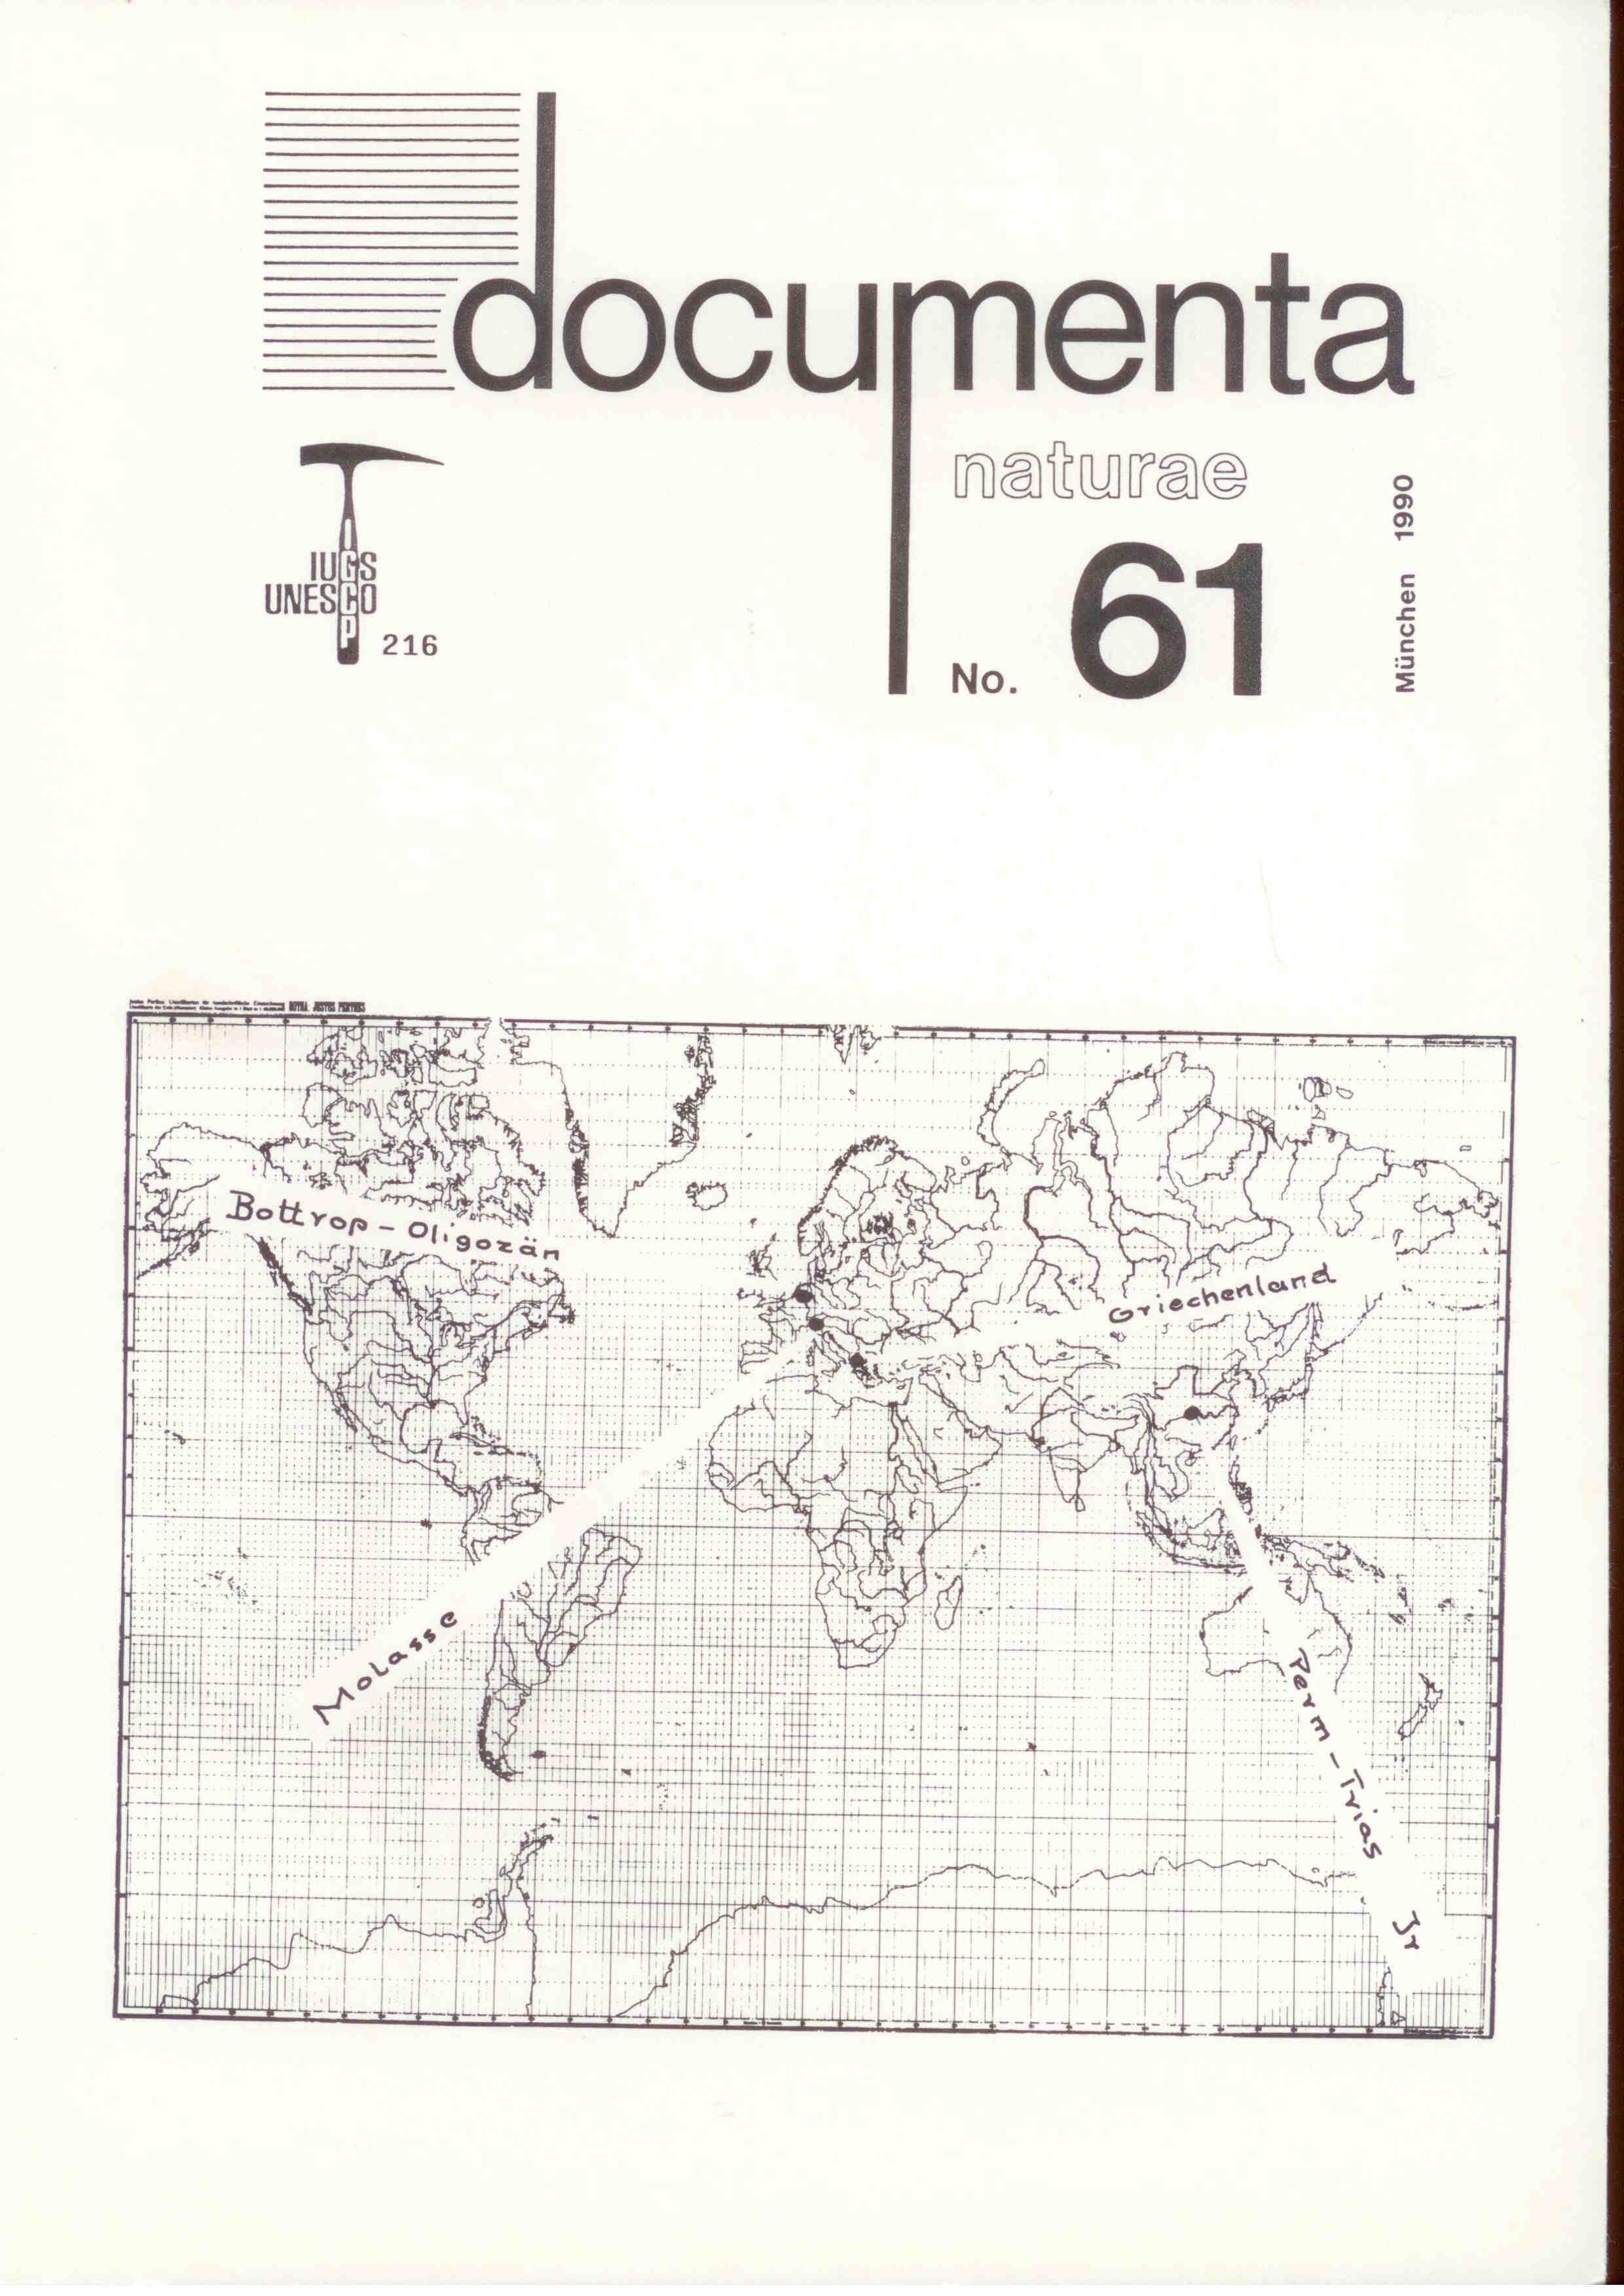 documenta naturae no. 61